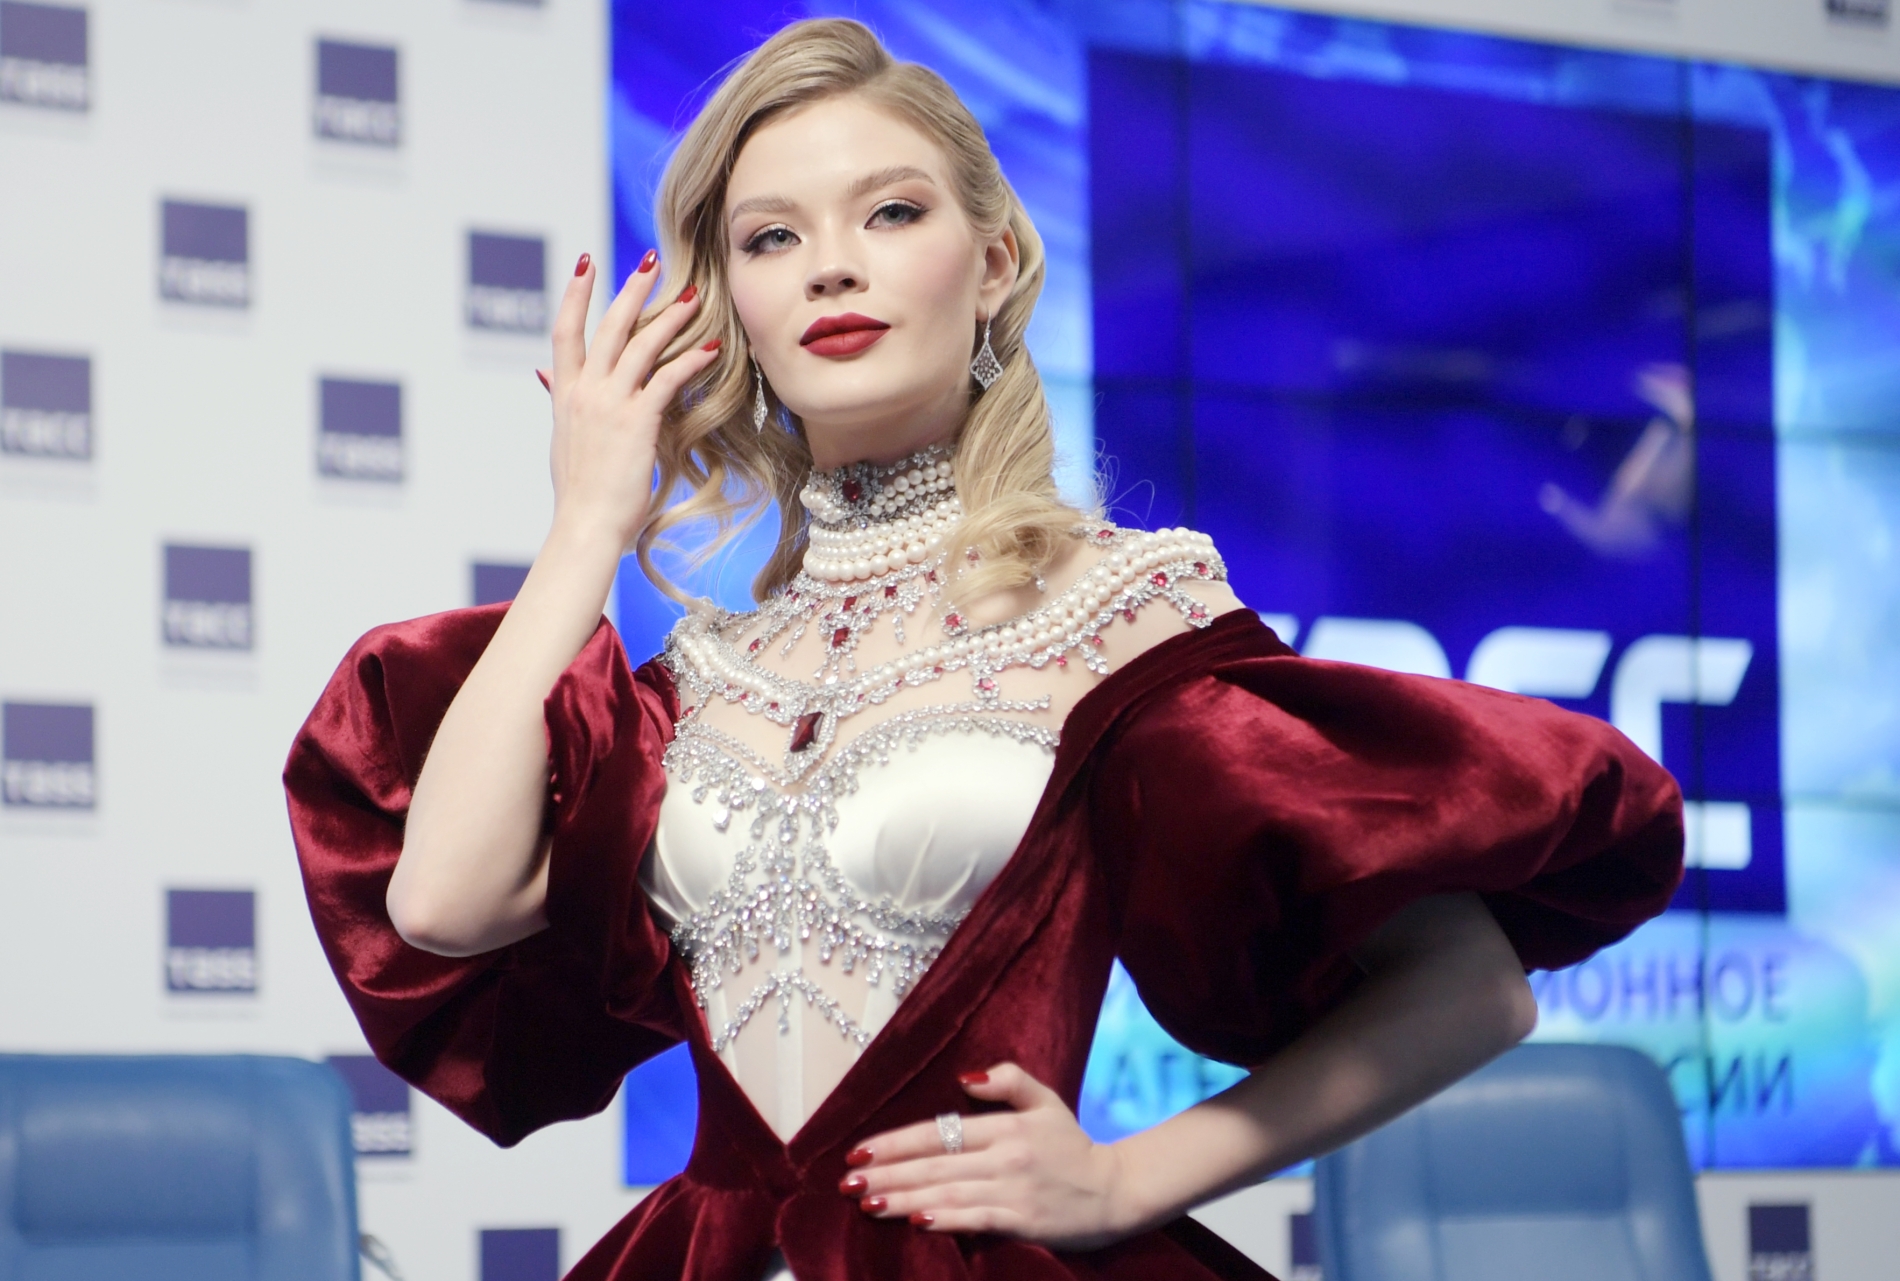  Россиянка Анна Линникова стала финалисткой международного конкурса красоты "Мисс Вселенная"